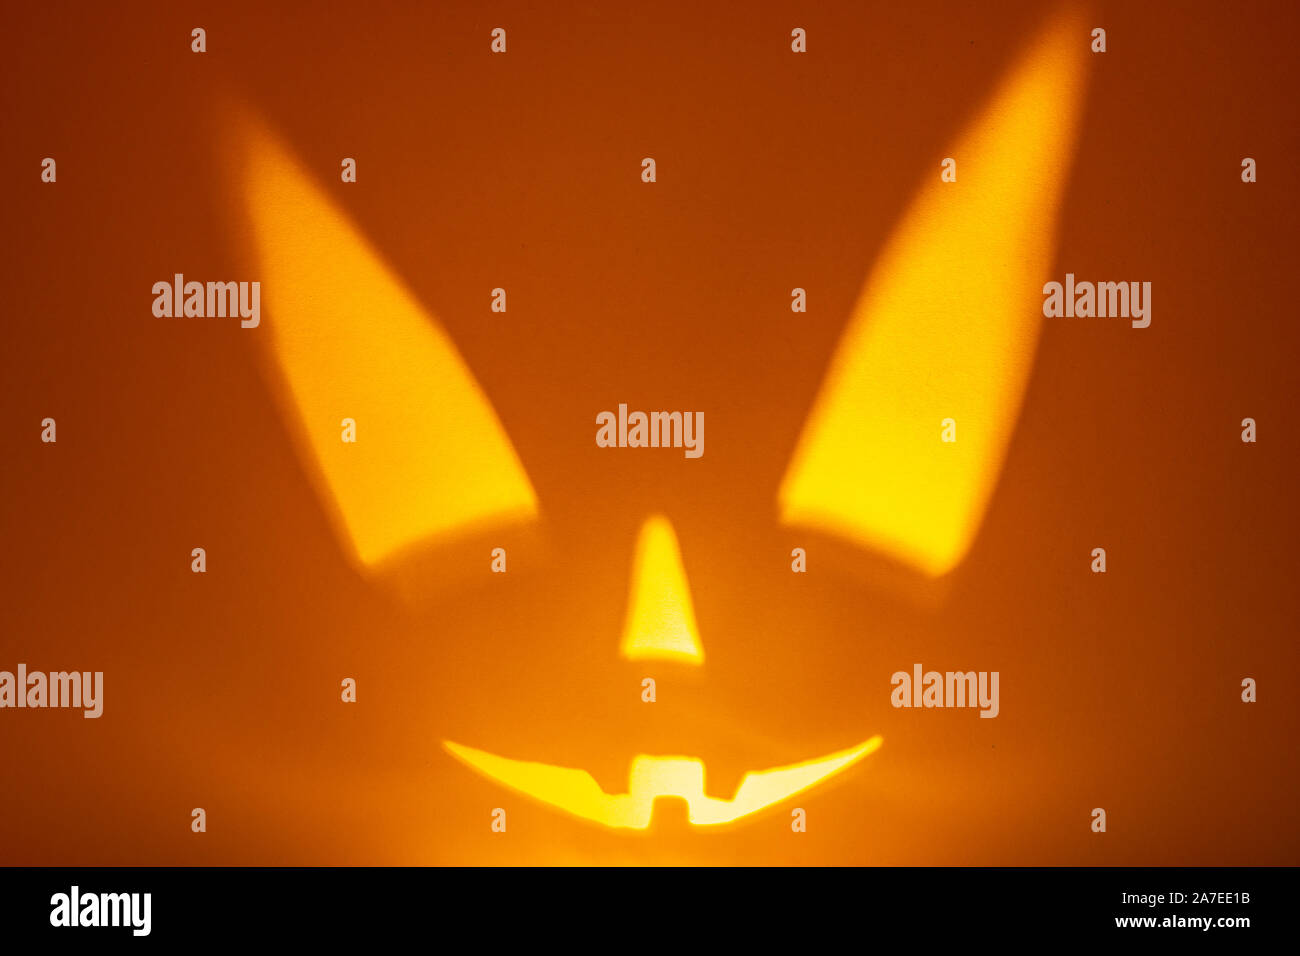 Schatten von Halloween scary pumpkin Gesicht auf dunklen orange Papier Hintergrund. Schatten aus dem Feuer. Halloween Horror Hintergrund. Kopieren Sie Platz. Stockfoto